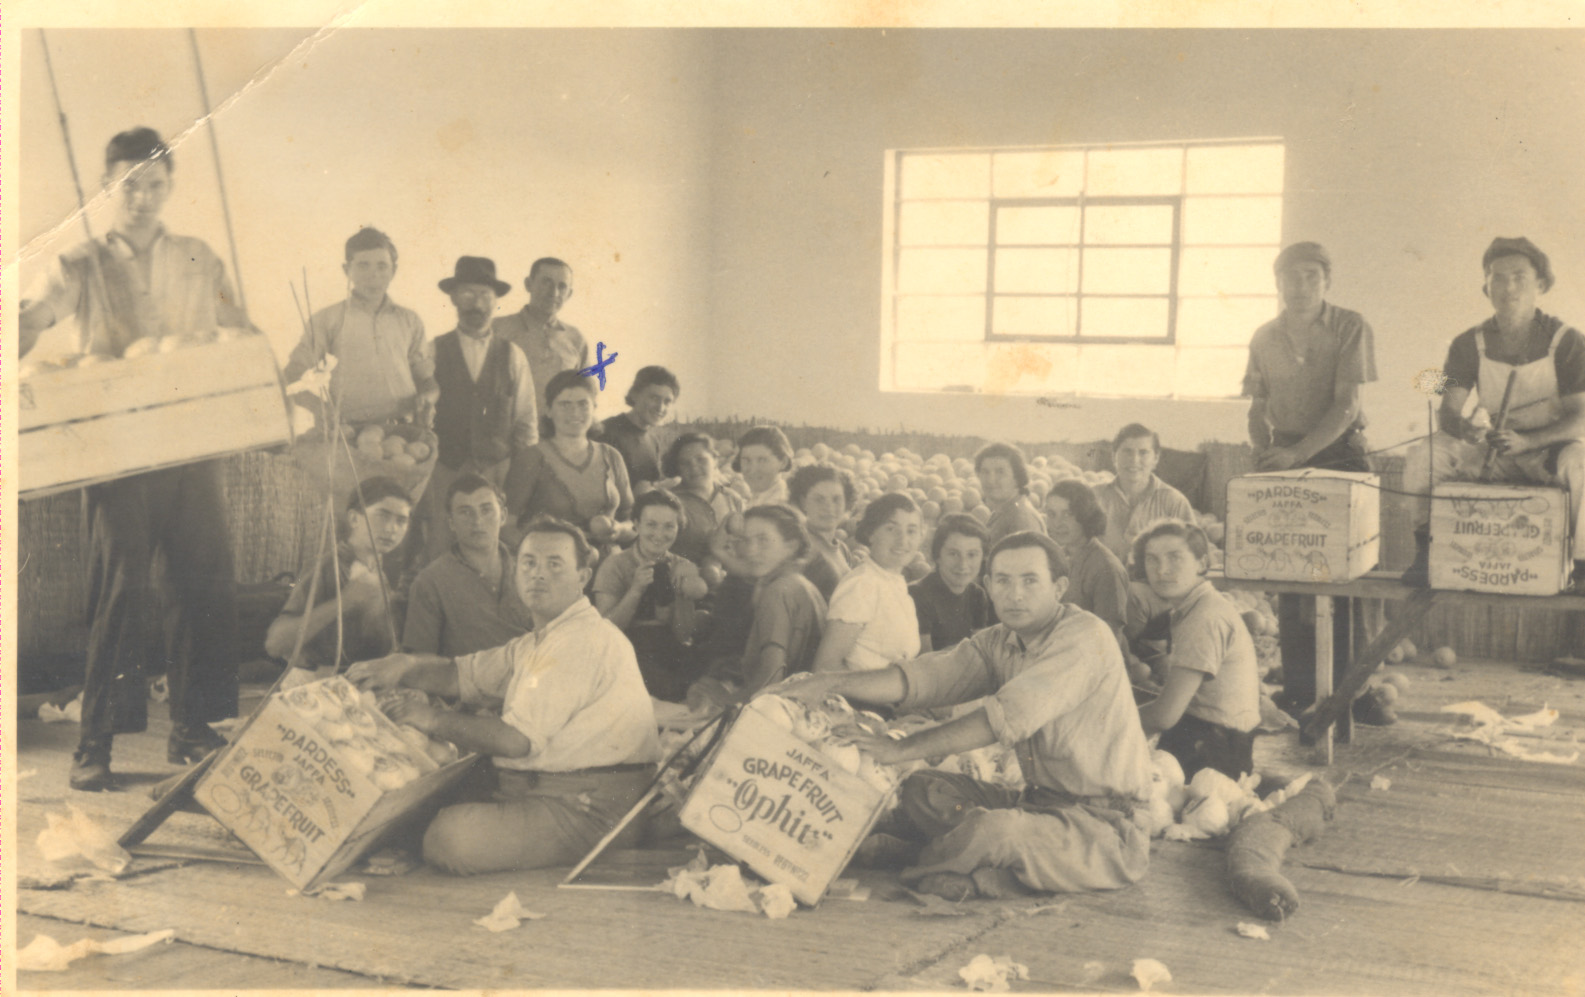 דובה גולברג מקבוצת צמח פרדס רעננה תרצז' נראית בבית האריזה עם עובדים אחרים לאחר קטיף בירור ואריזה למשלוח לחו'ל 1937